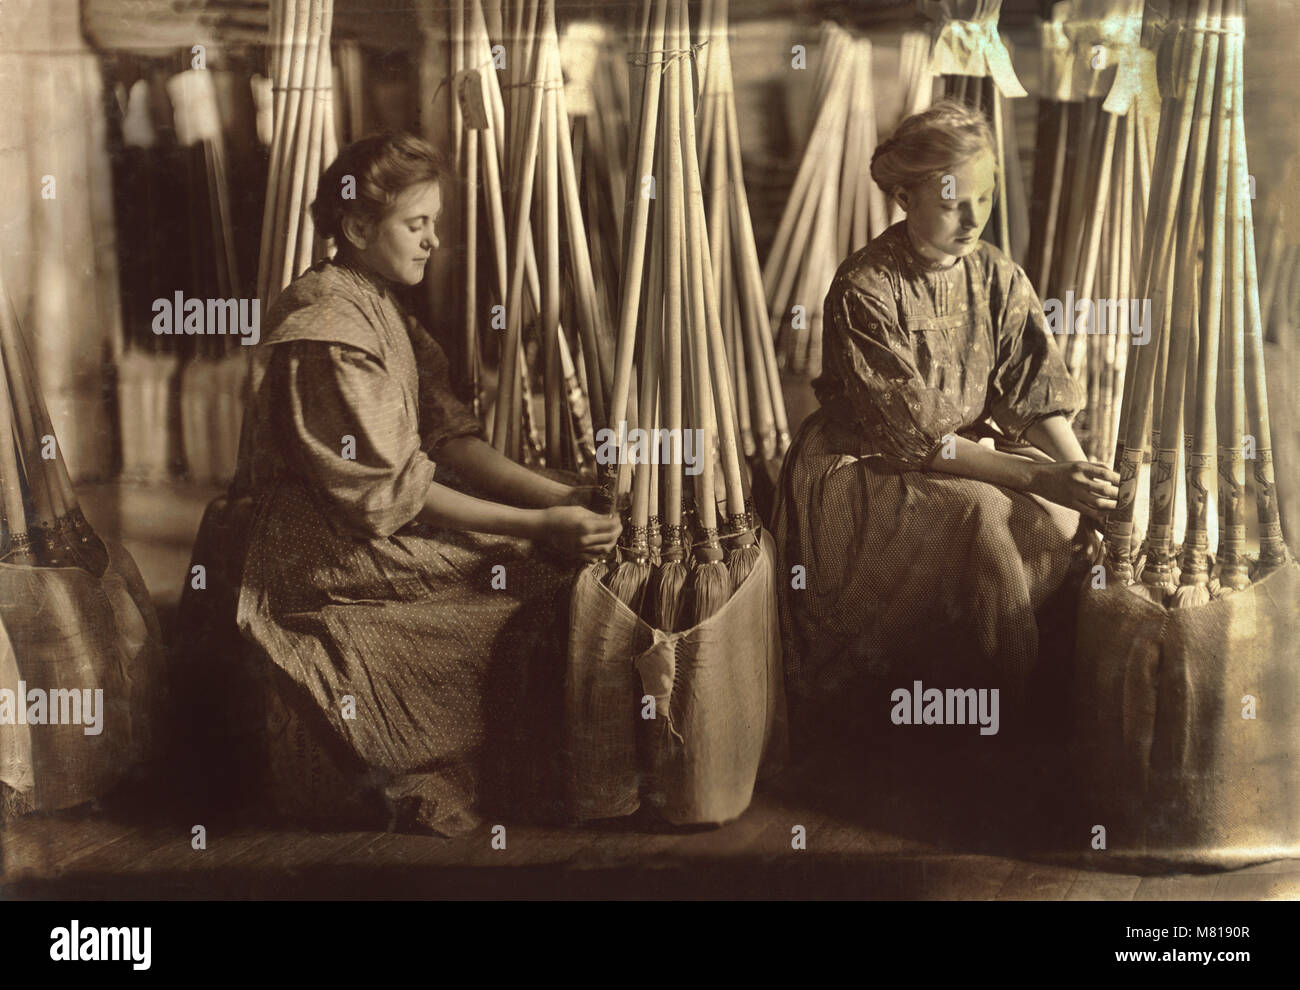 Deux jeunes filles au service d'Emballage Emballage Brooms, S.W. Brown Manufacturing Company, Evansville, Indiana, USA, Lewis Hine pour Comité nationale sur le travail des enfants, Octobre 1908 Banque D'Images